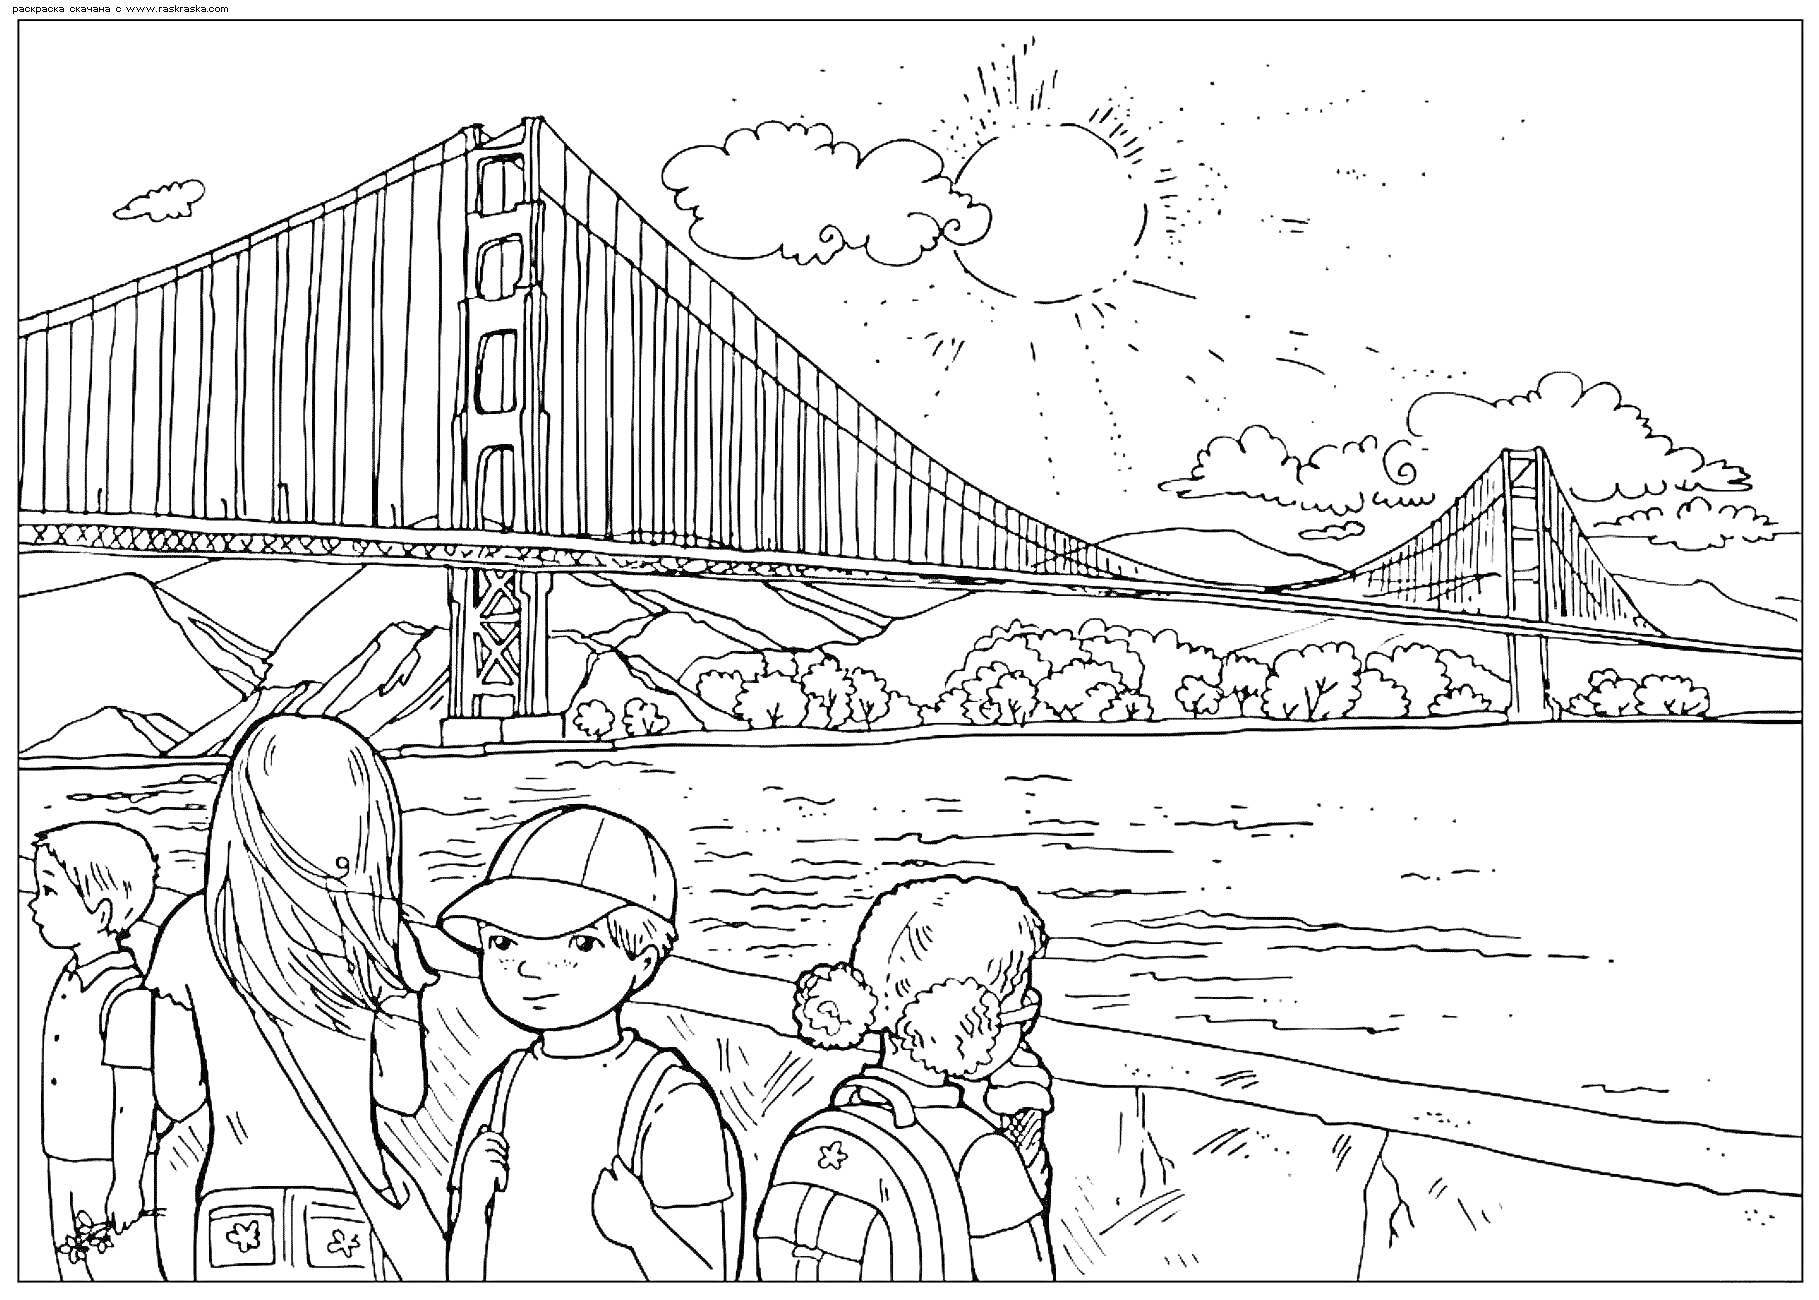 Знаменитый мост Золотые Ворота, солнце, облака, дети с рюкзаками на переднем плане